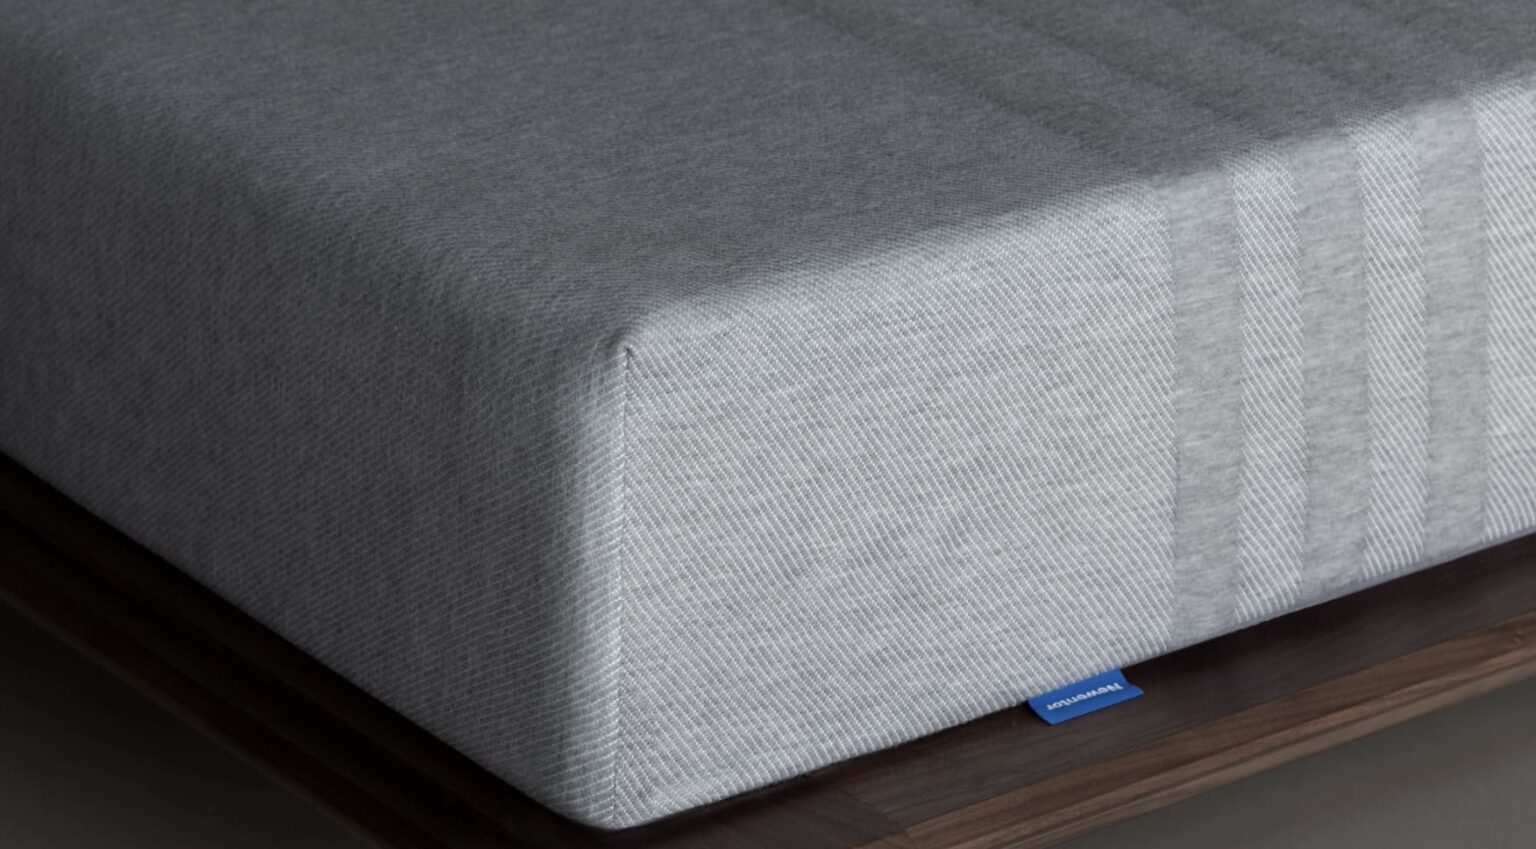 newentor hesperis mattress review